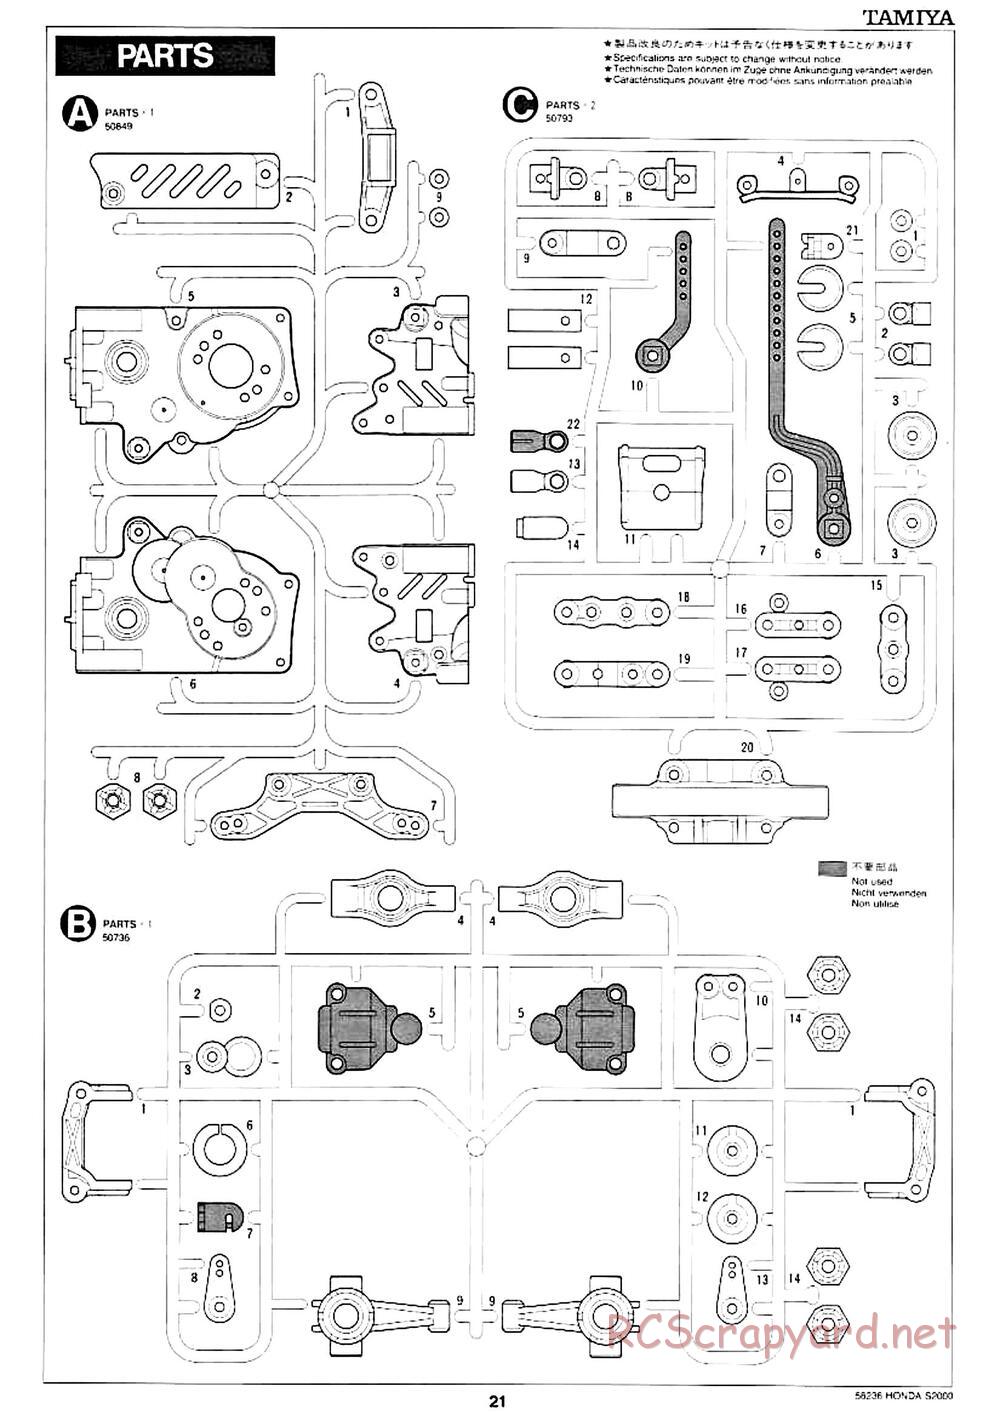 Tamiya - Honda S2000 - M04L Chassis - Manual - Page 17